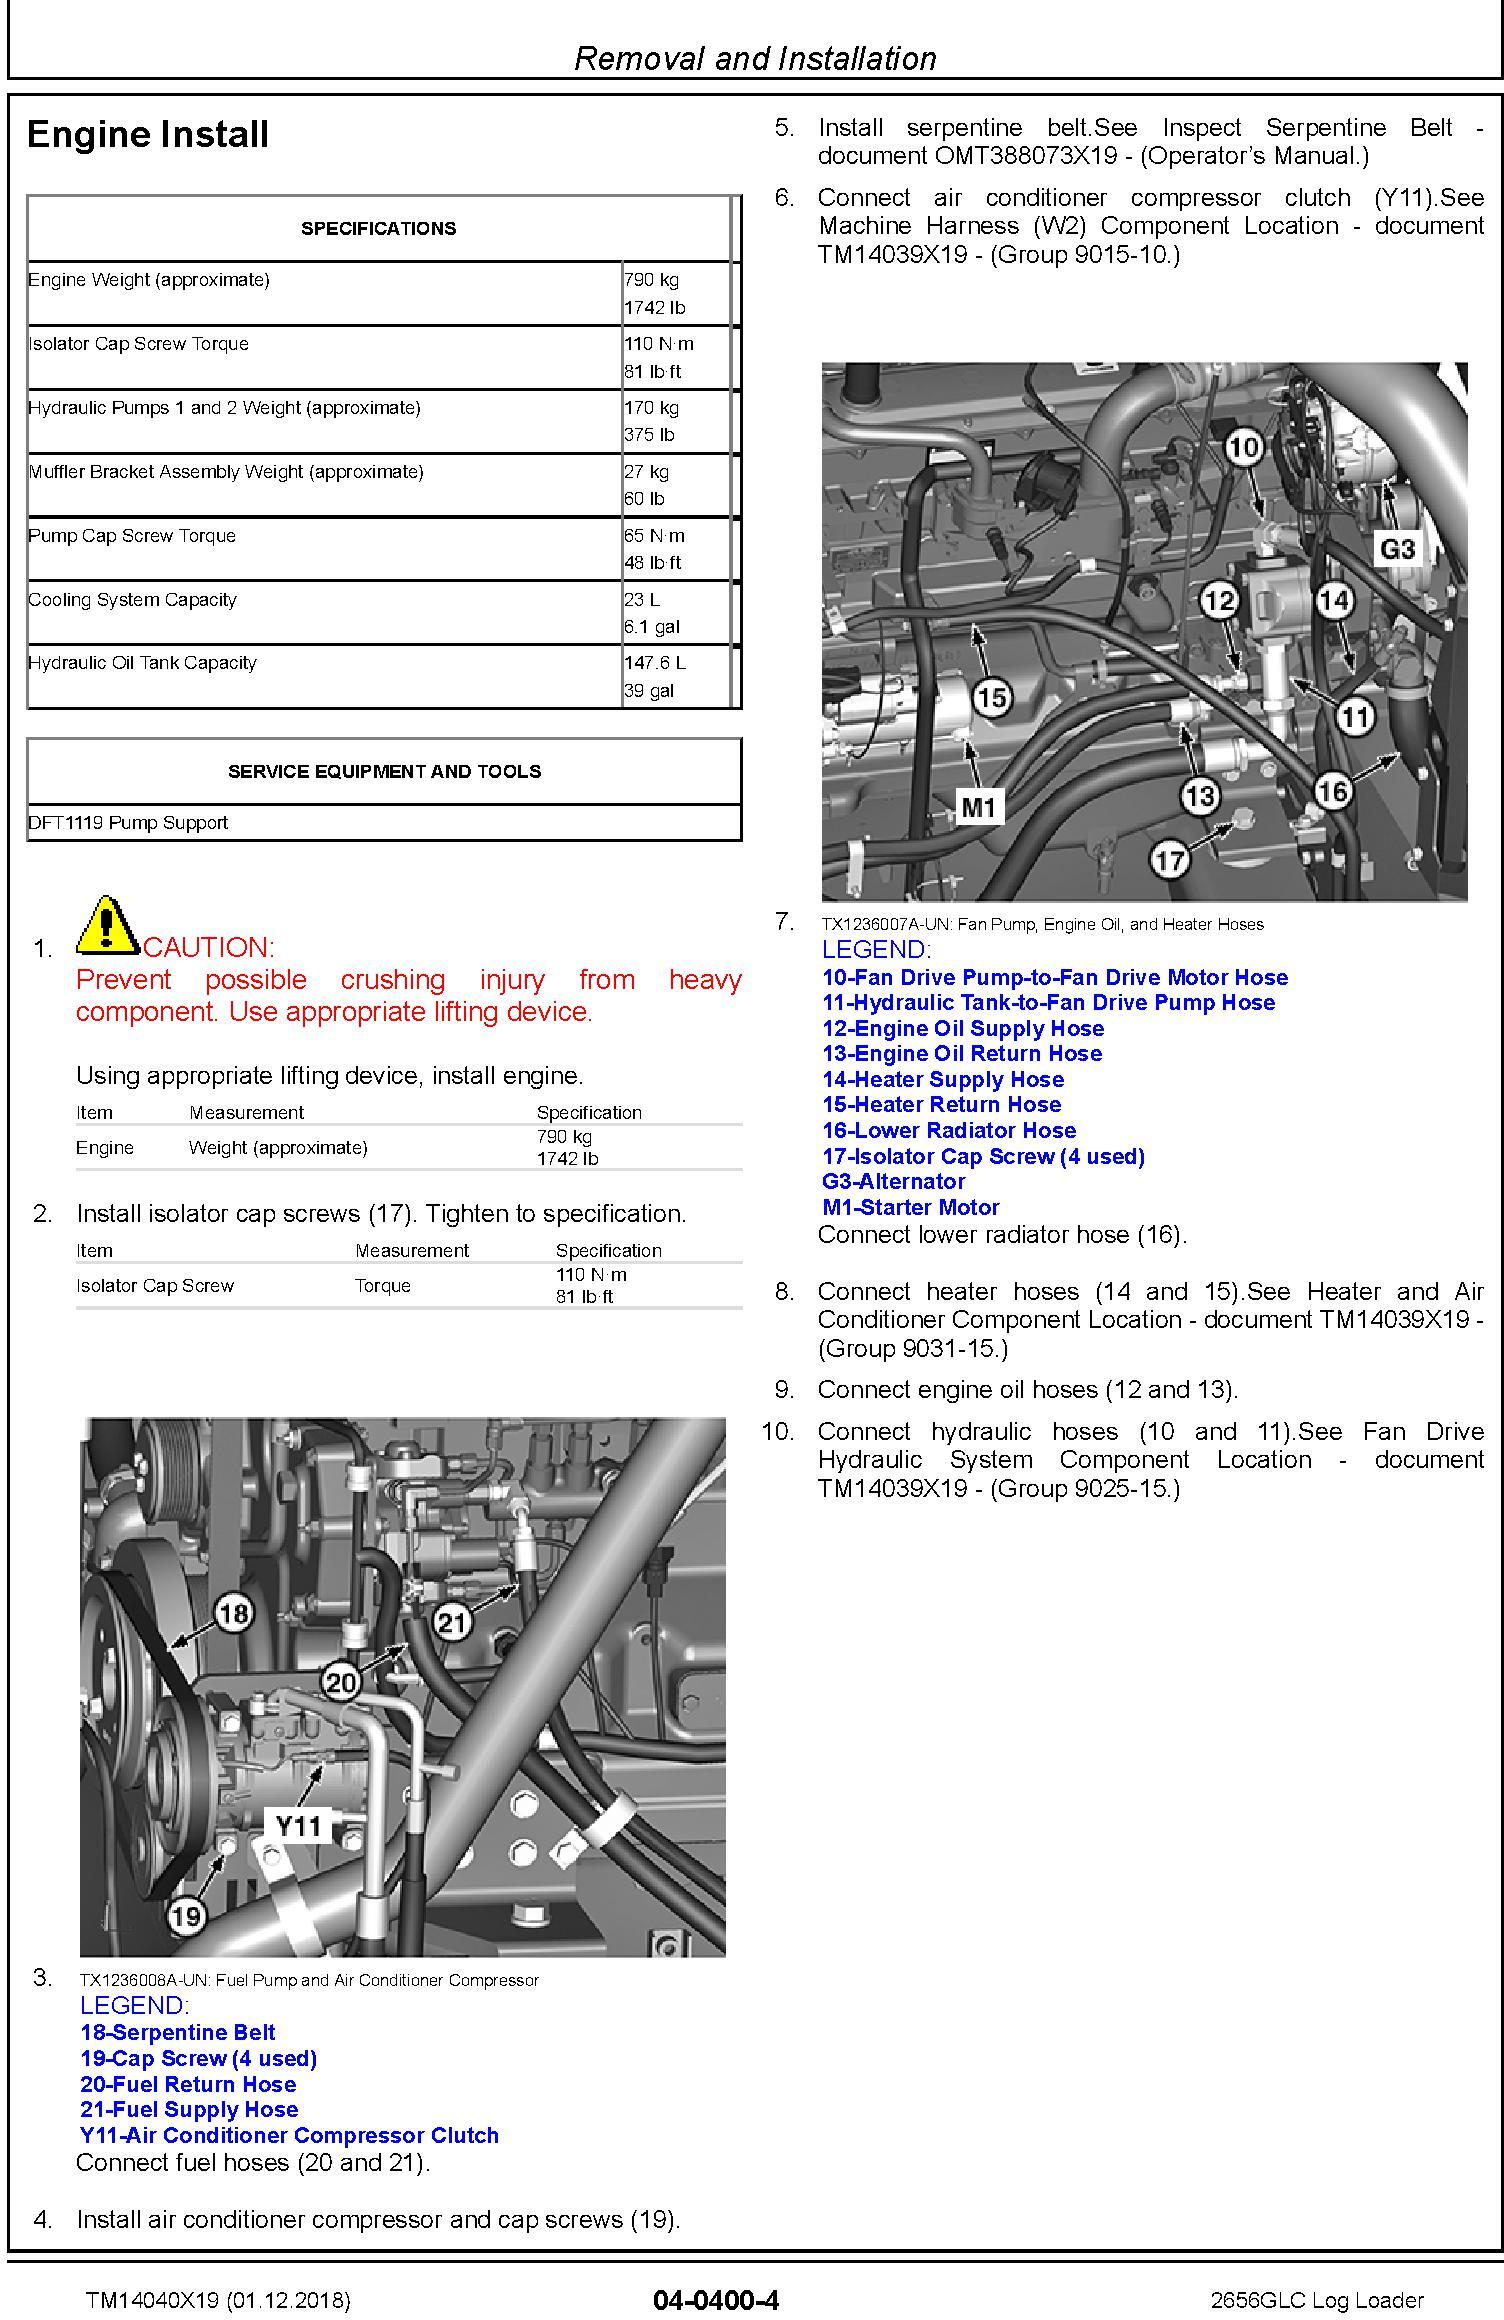 John Deere 2656GLC (SN. C266001-, D266001) Log Loader Repair Technical Service Manual (TM14040X19) - 3